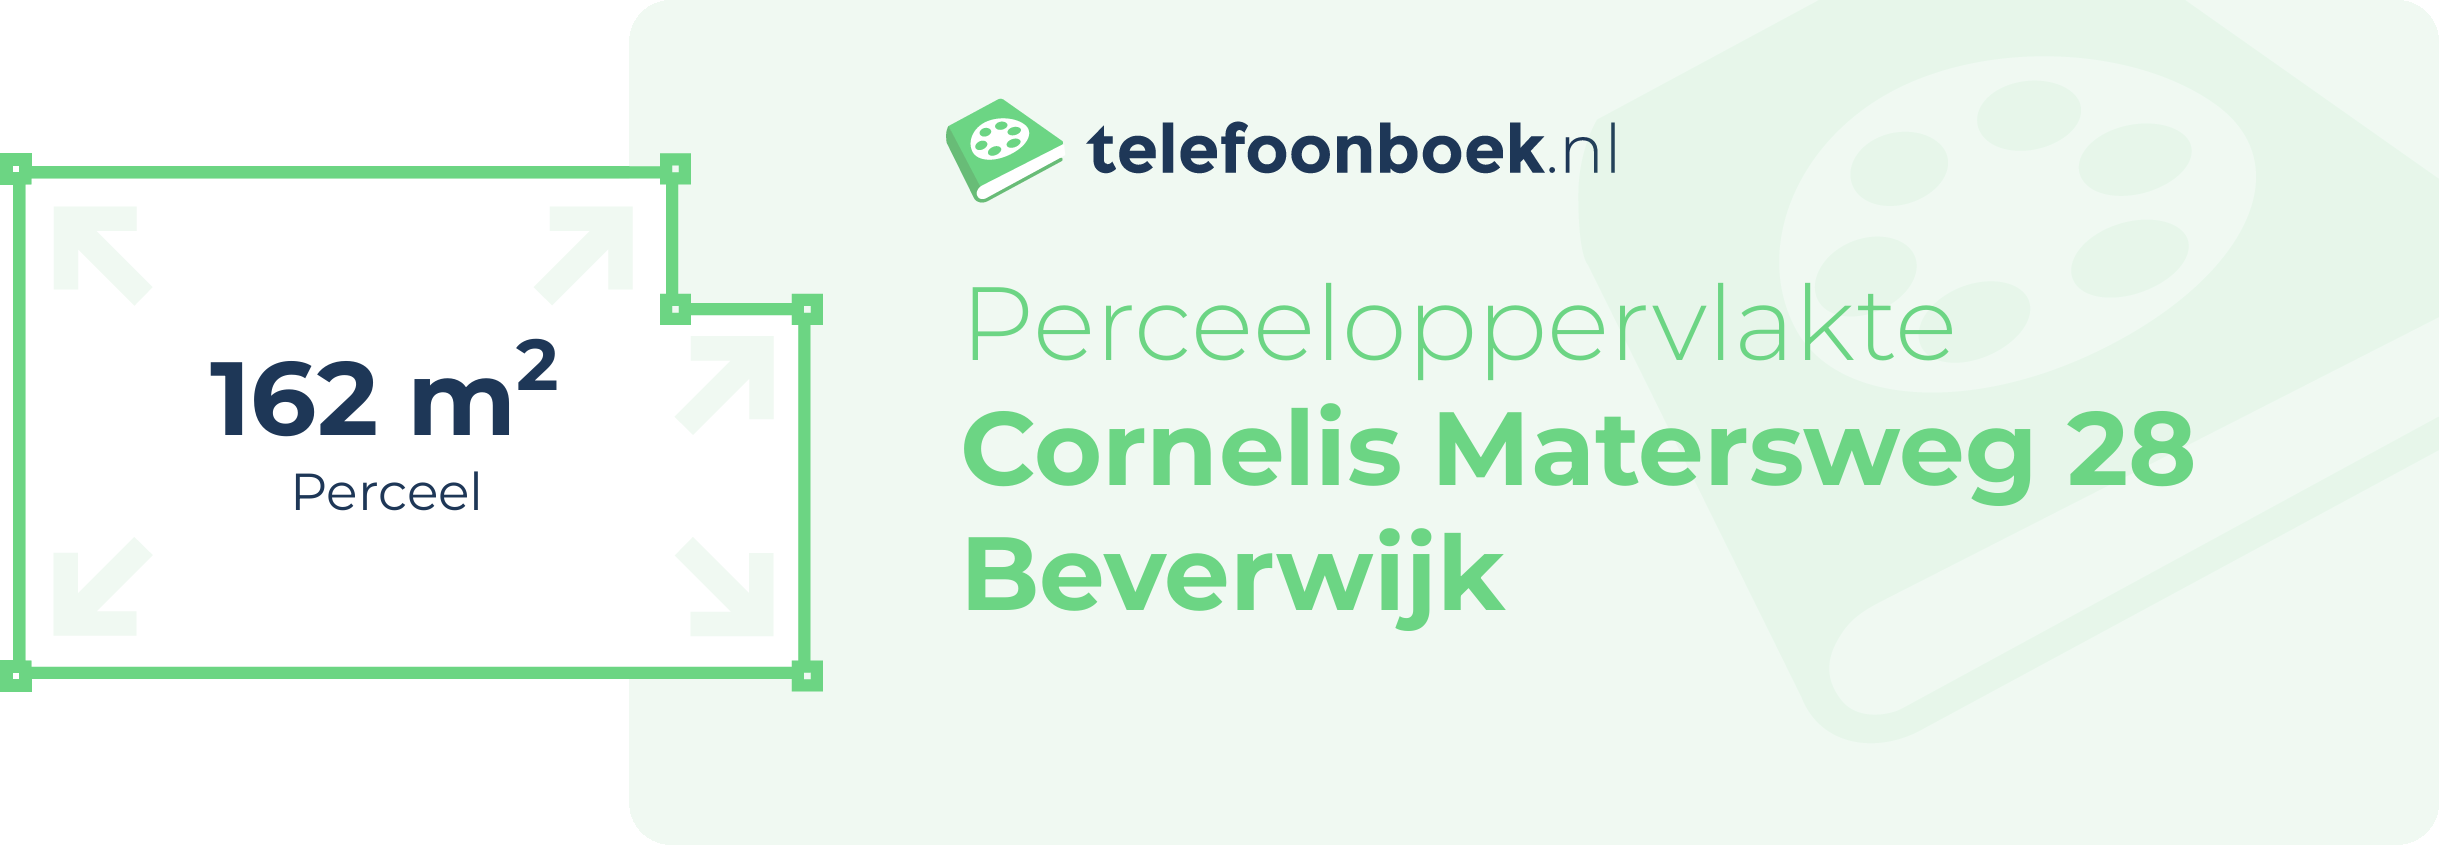 Perceeloppervlakte Cornelis Matersweg 28 Beverwijk